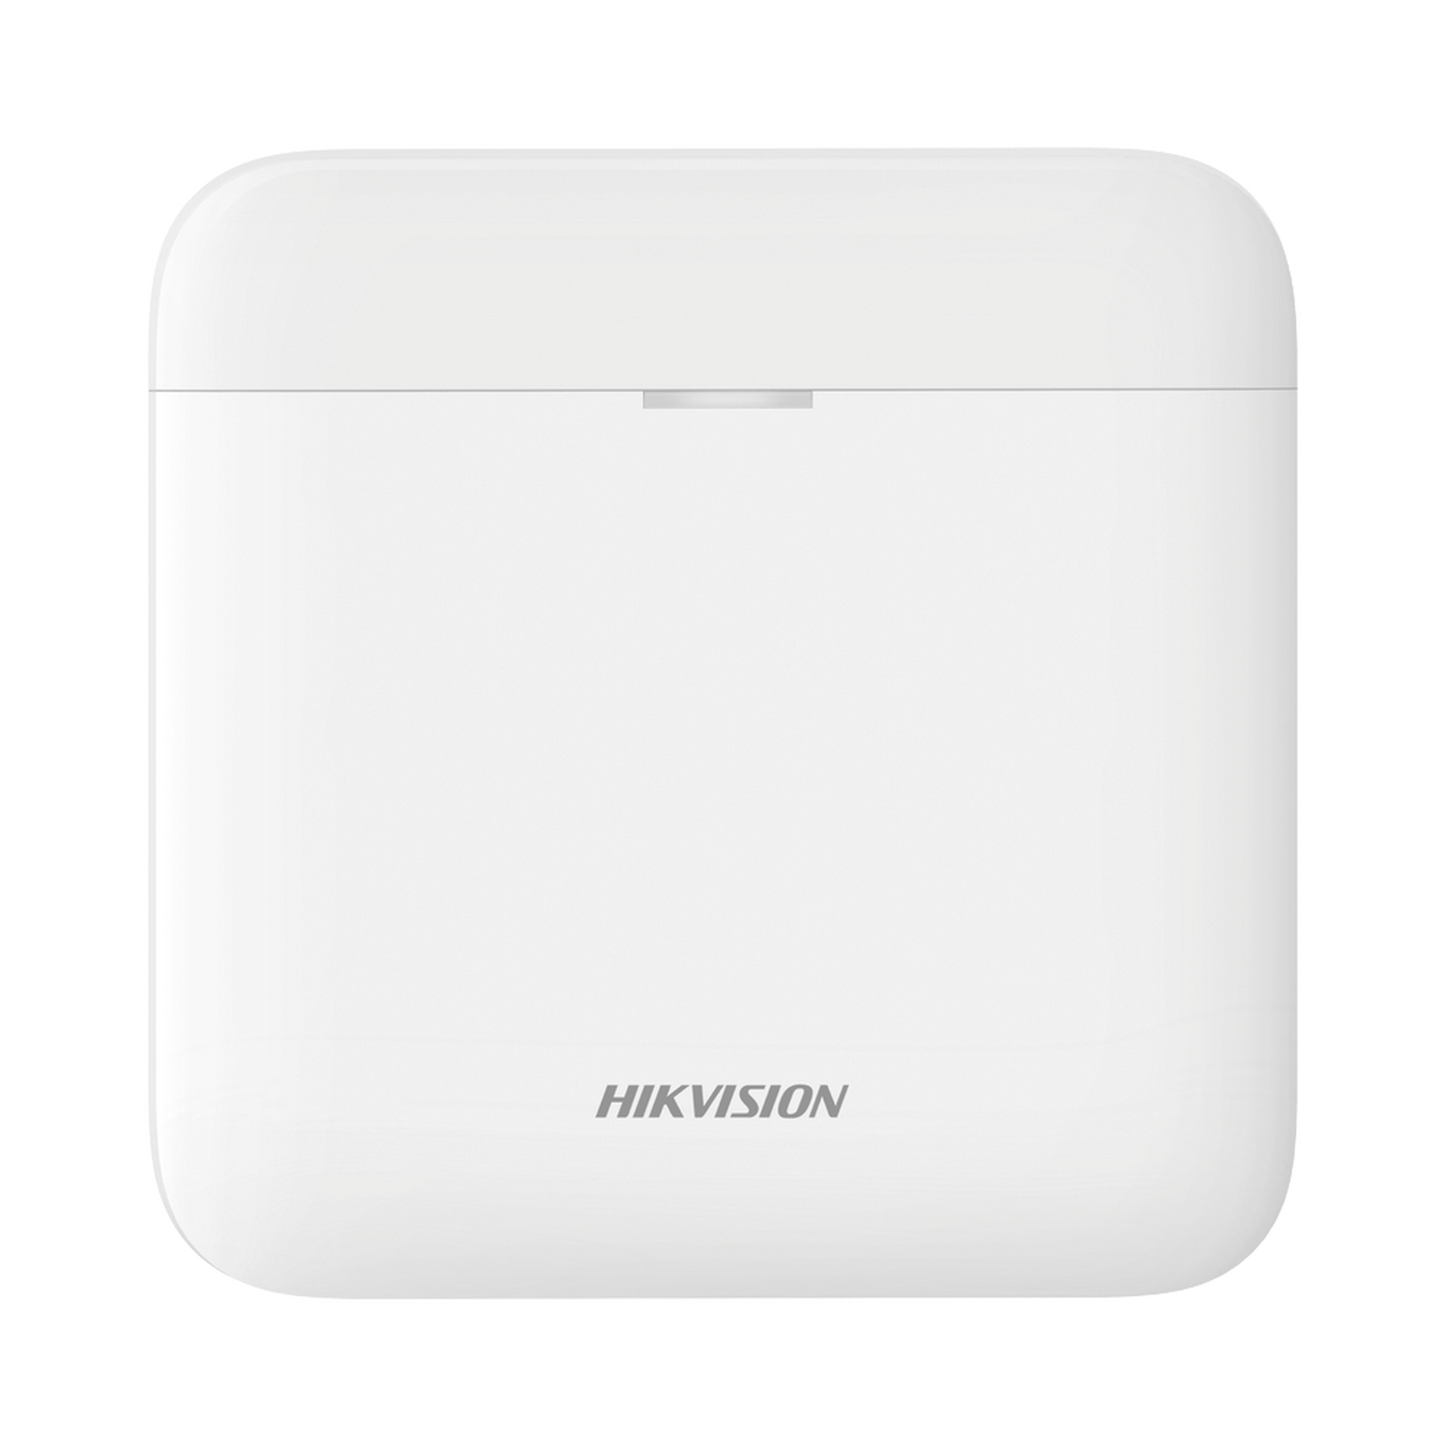 (AX PRO) Panel de Alarma Inalámbrico de Hikvision / Soporta 96 Zonas / GSM 3G/4G, Wi-Fi y Ethernet / Incluye Batería de respaldo / Compatible con los Accesorios AX PRO.